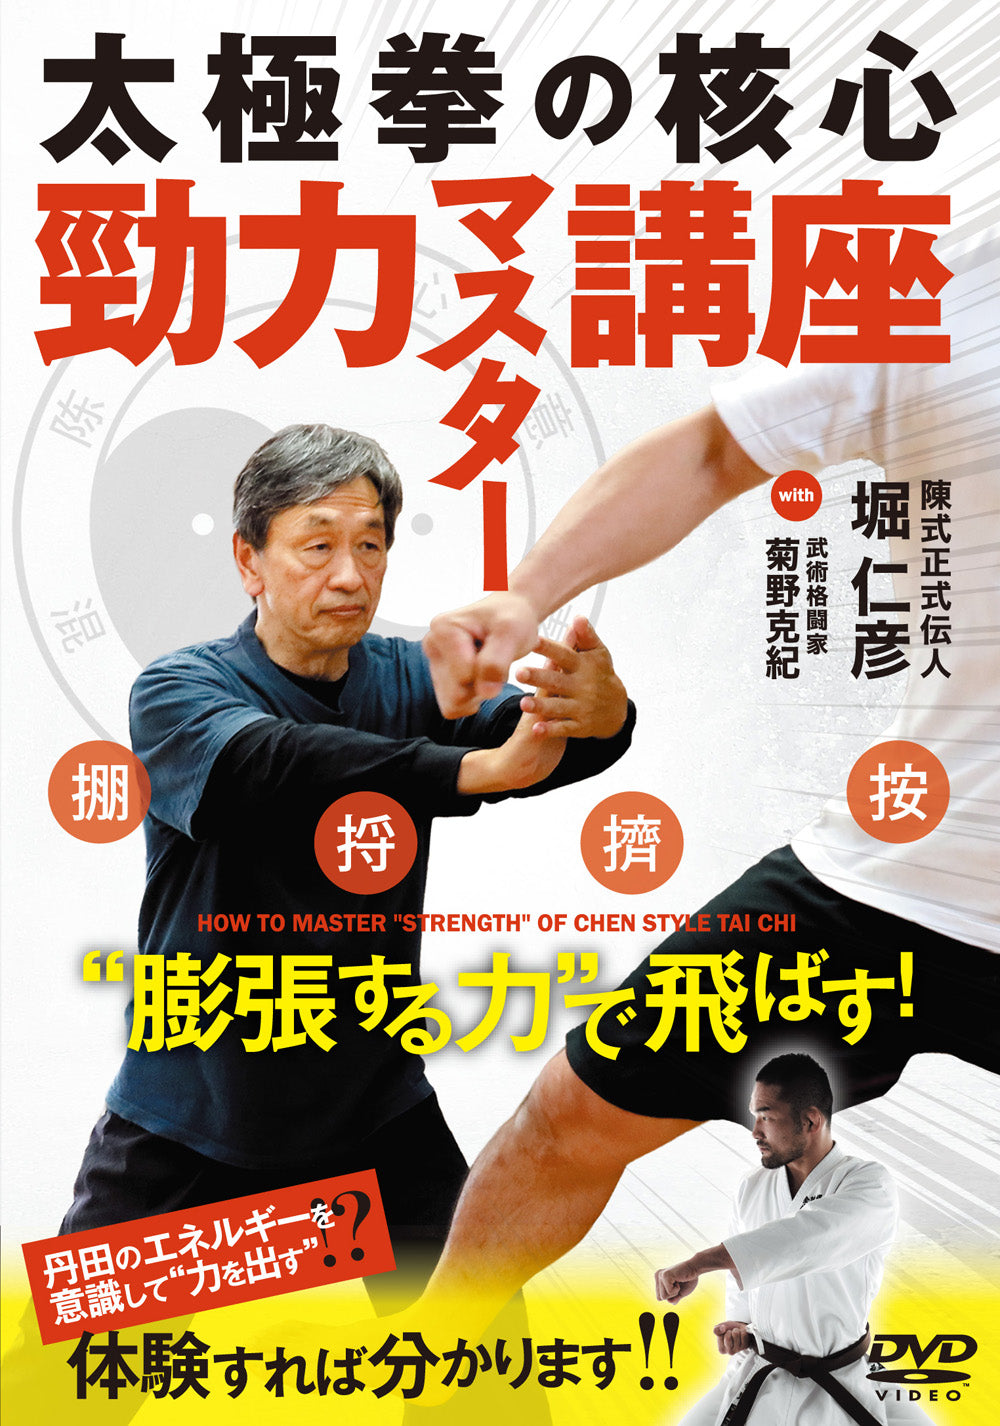 How to Master Chen Style Tai Chi DVD by Hoshihiko Hori